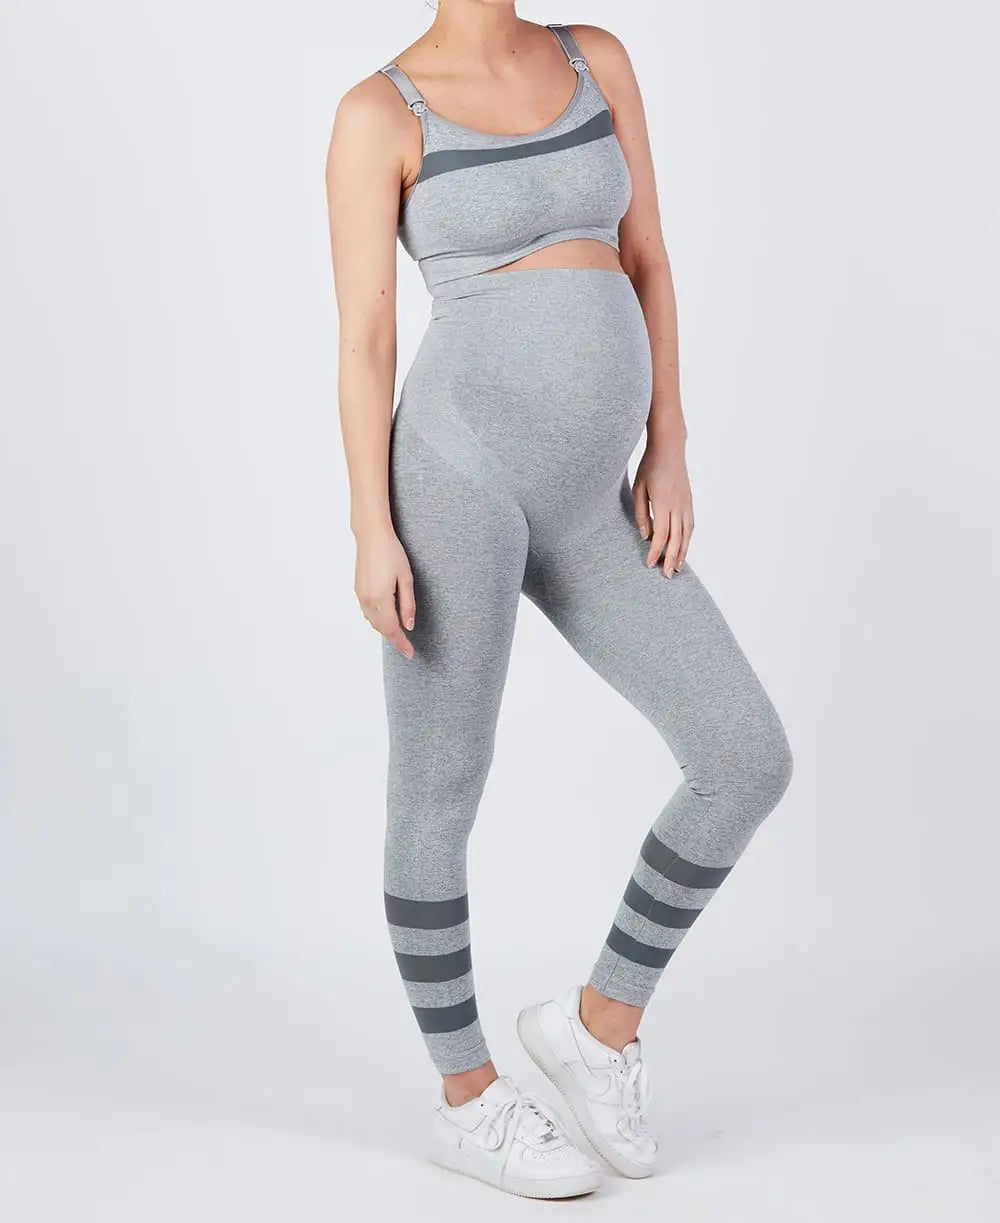 Sport and maternity leggings Woma grey - Leggings